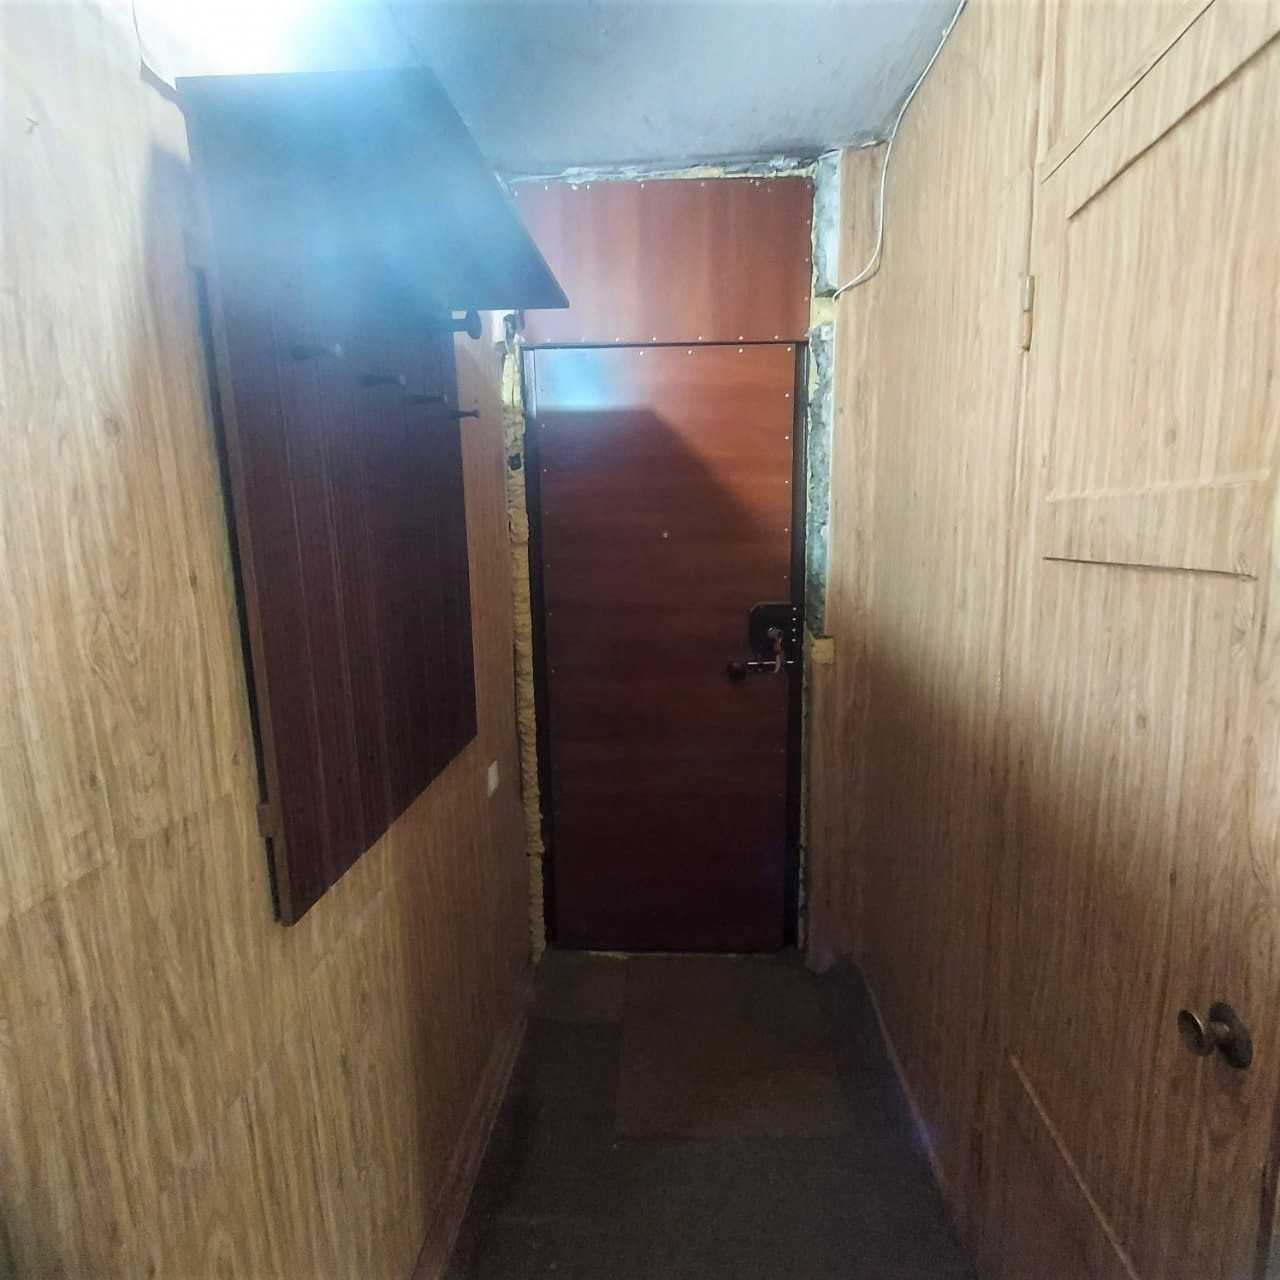 Продам 2-х комнатную квартиру в спальном районе города на Ержанова.